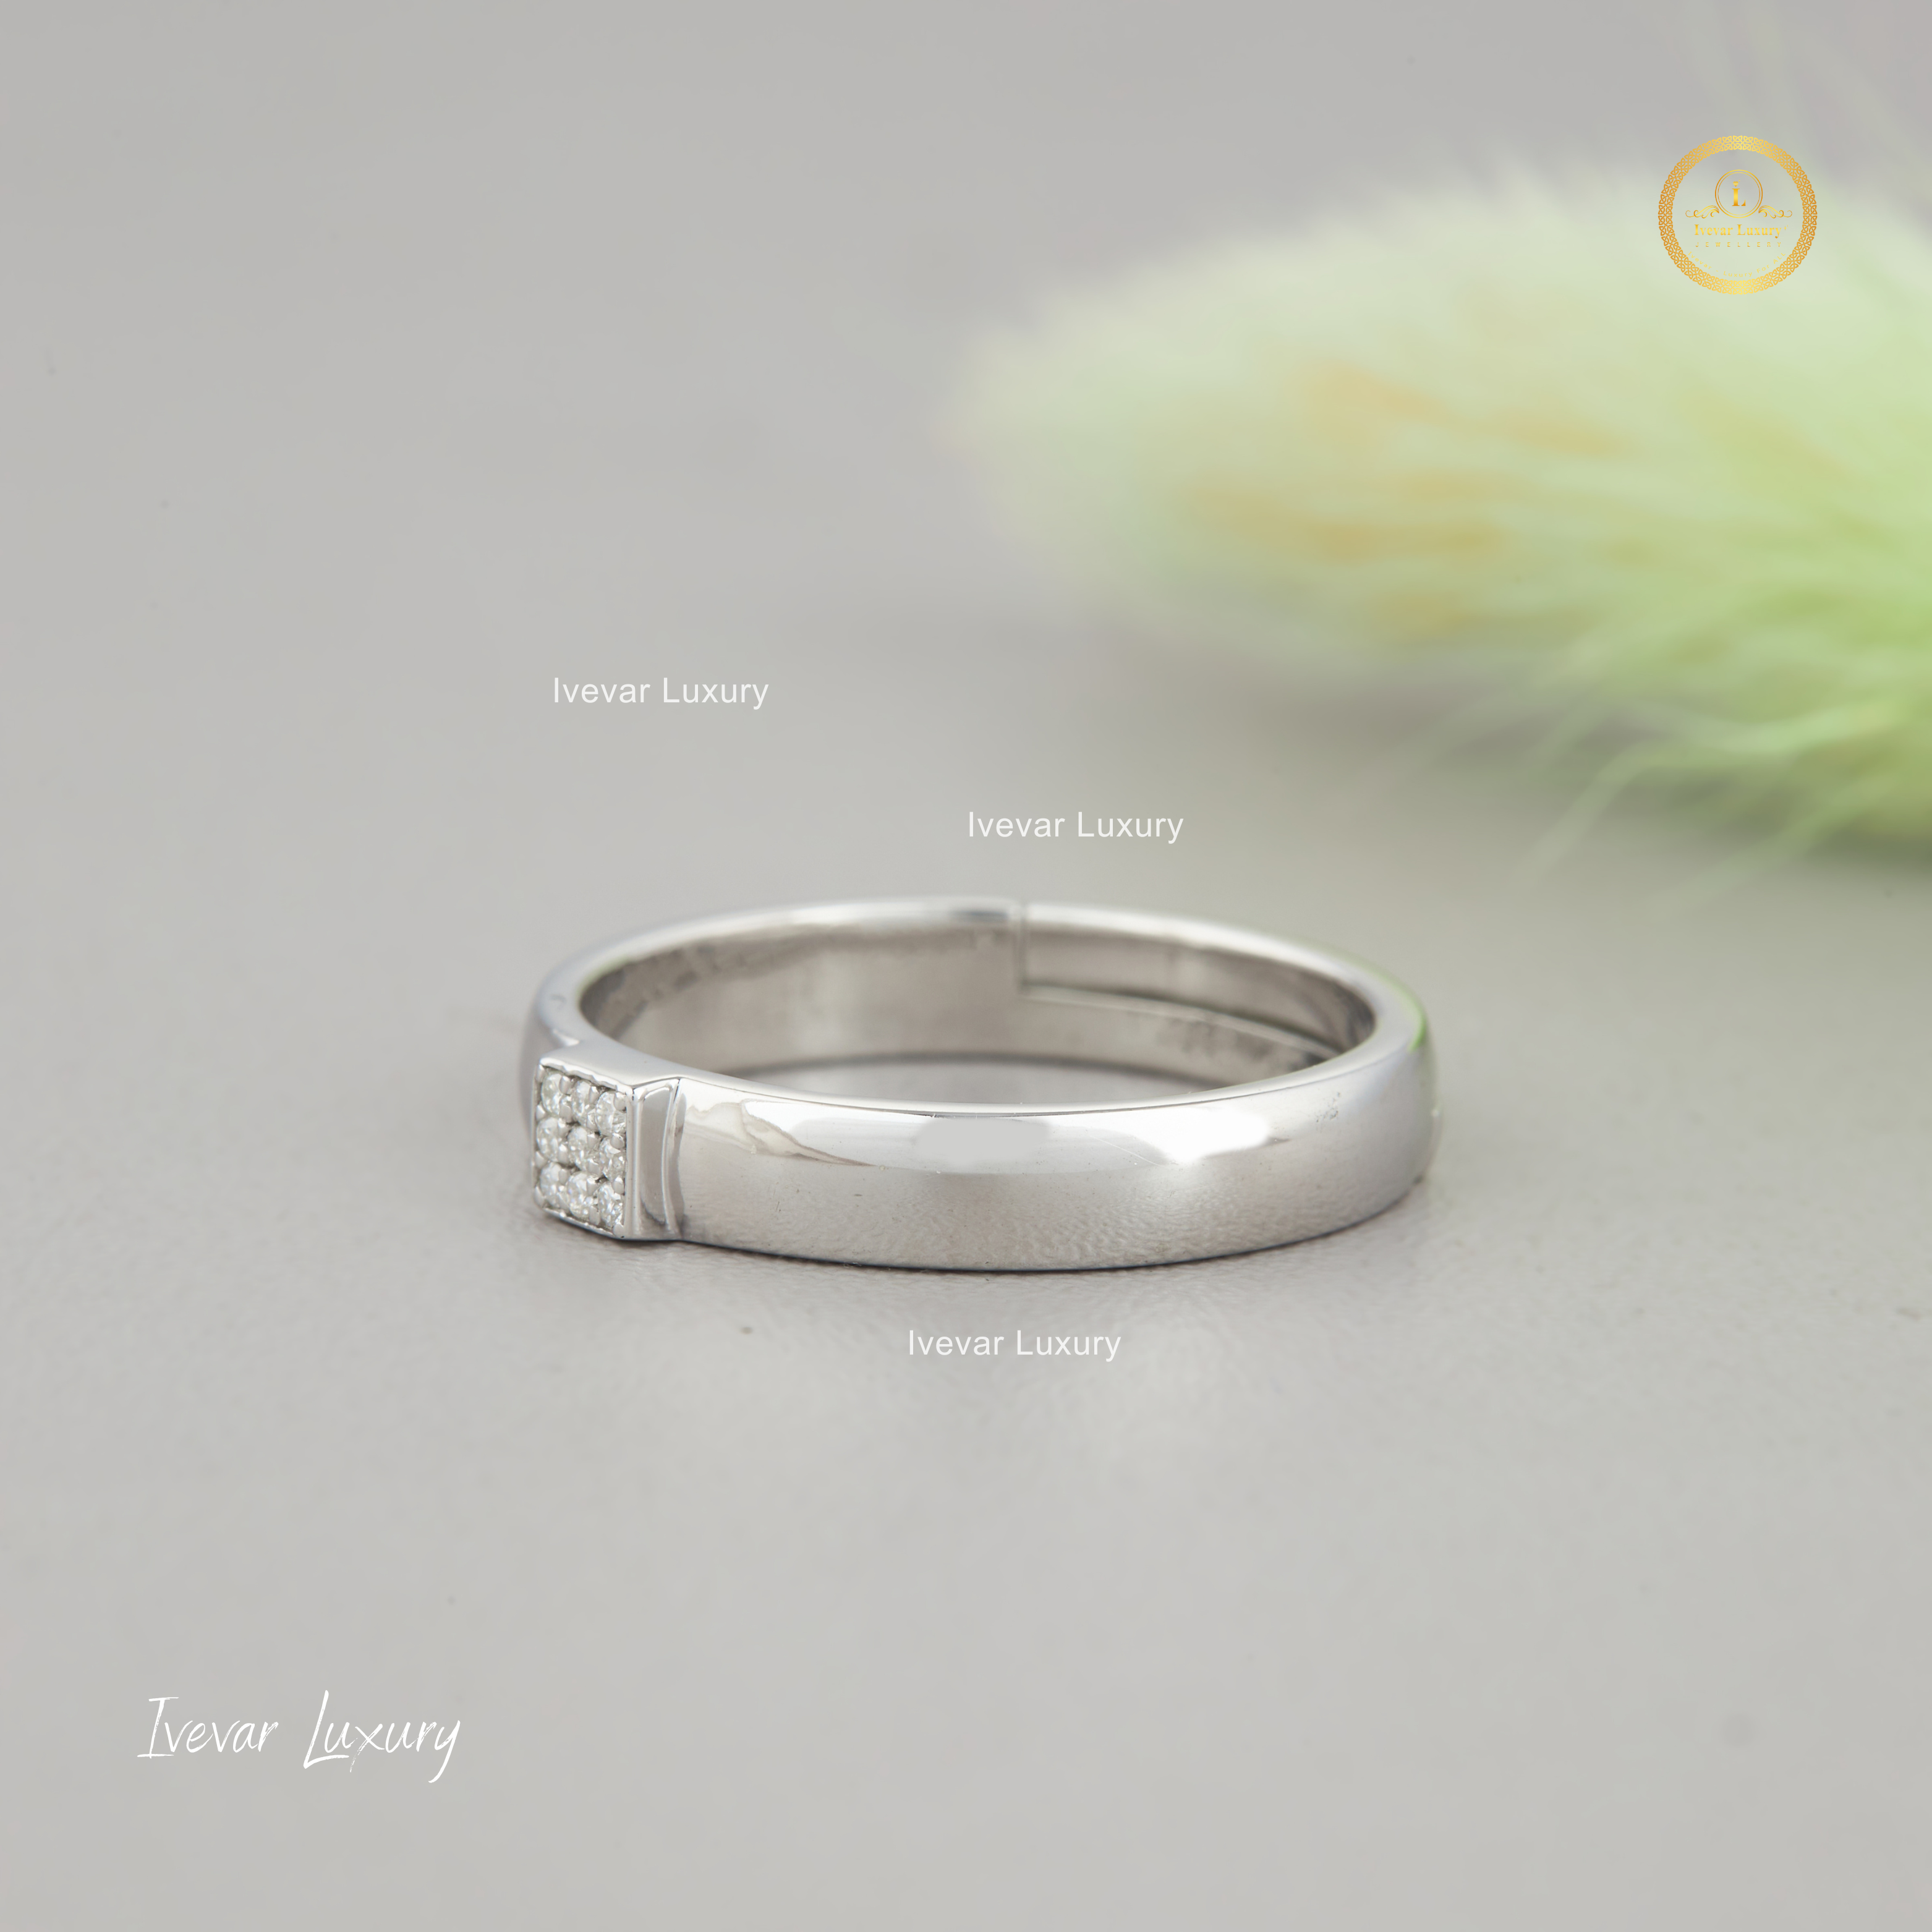 Ivevar 925 Silver Moissanite Diamond Ring For Women